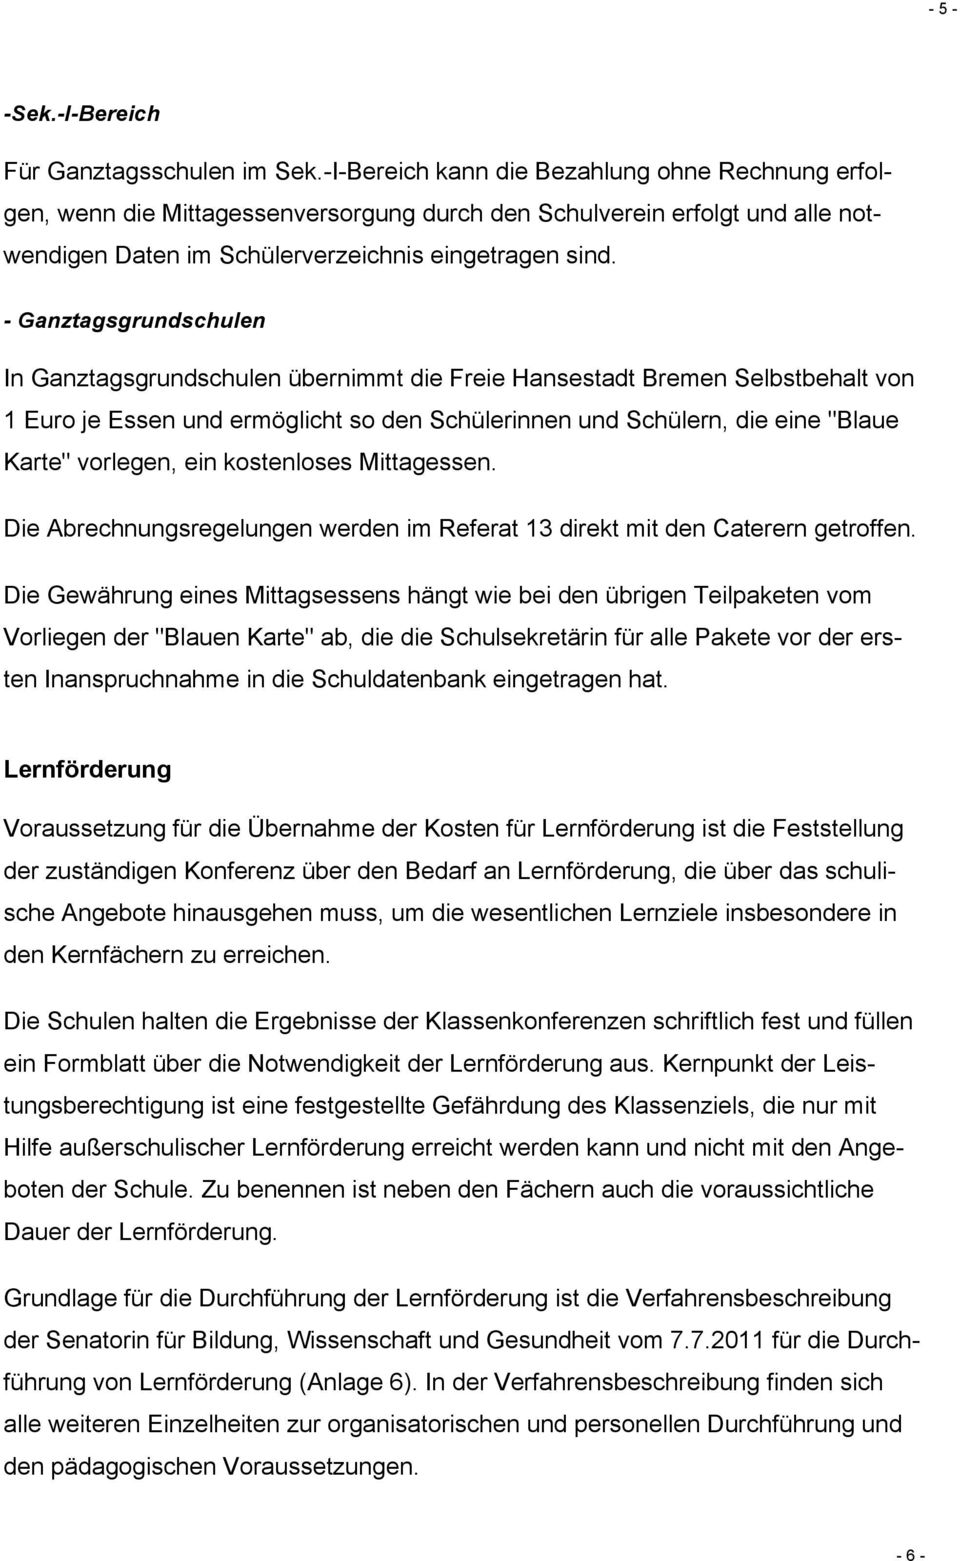 - Ganztagsgrundschulen In Ganztagsgrundschulen übernimmt die Freie Hansestadt Bremen Selbstbehalt von 1 Euro je Essen und ermöglicht so den Schülerinnen und Schülern, die eine "Blaue Karte" vorlegen,